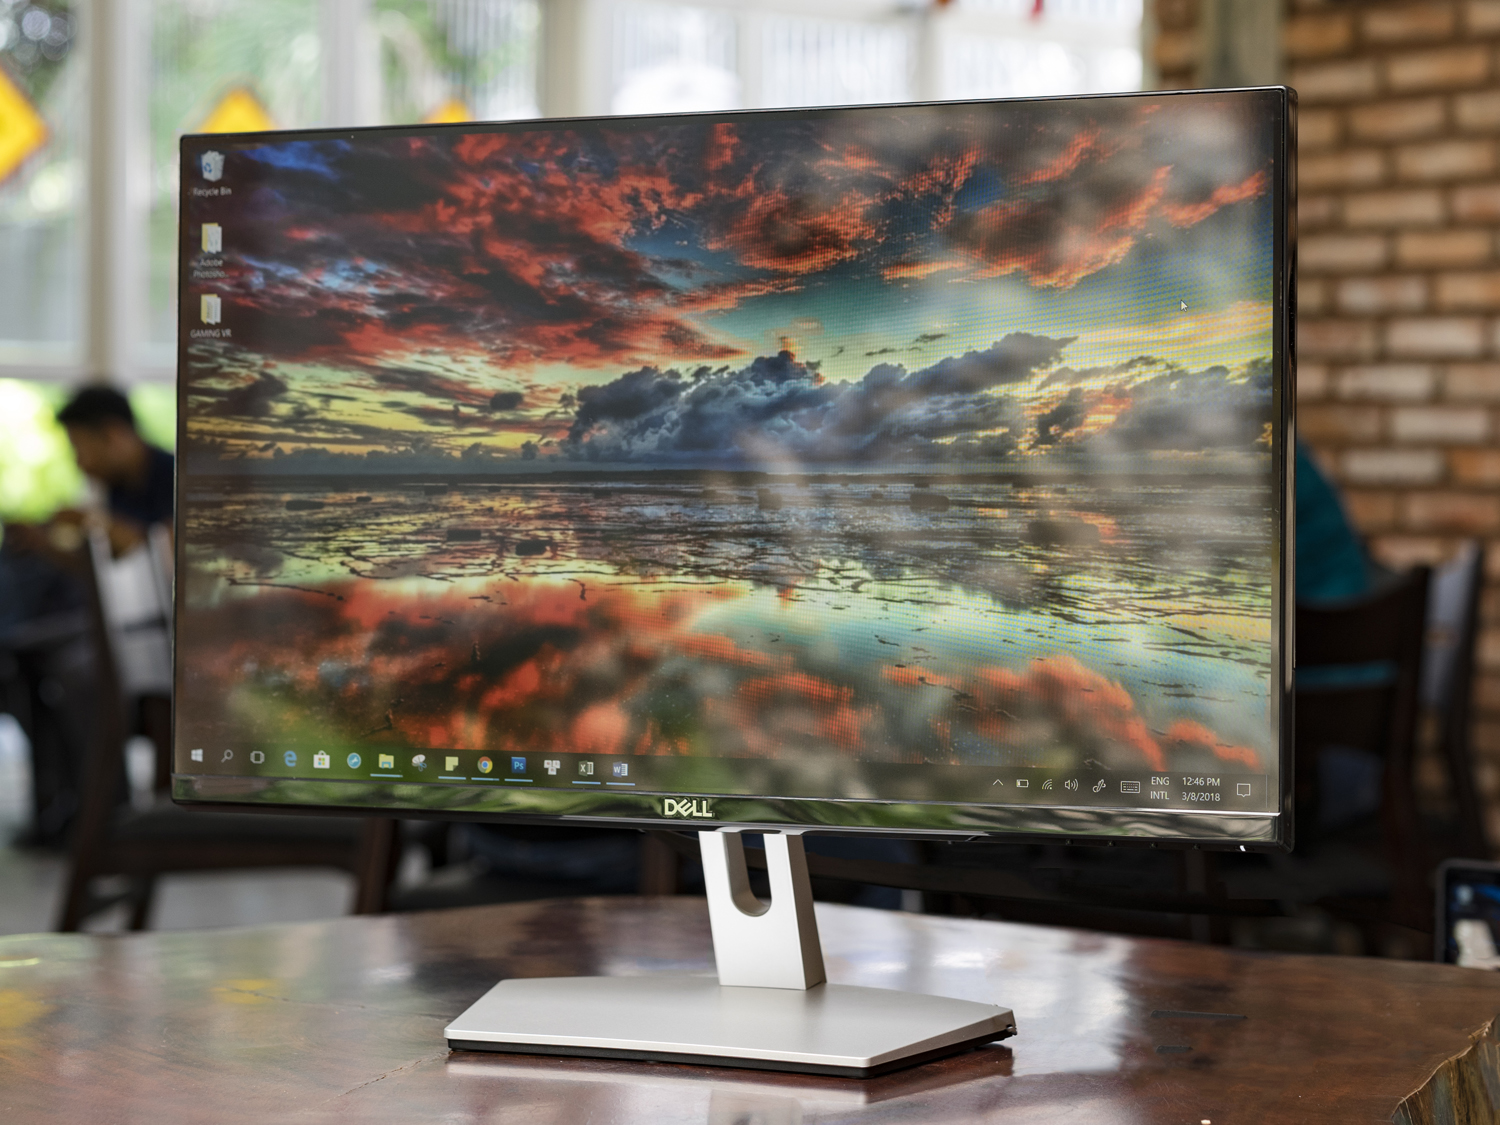 Dell ra mắt S-Series, màn hình cho văn phòng, có 3 kích thước: 23-inch, 24-inch và 27-inch.